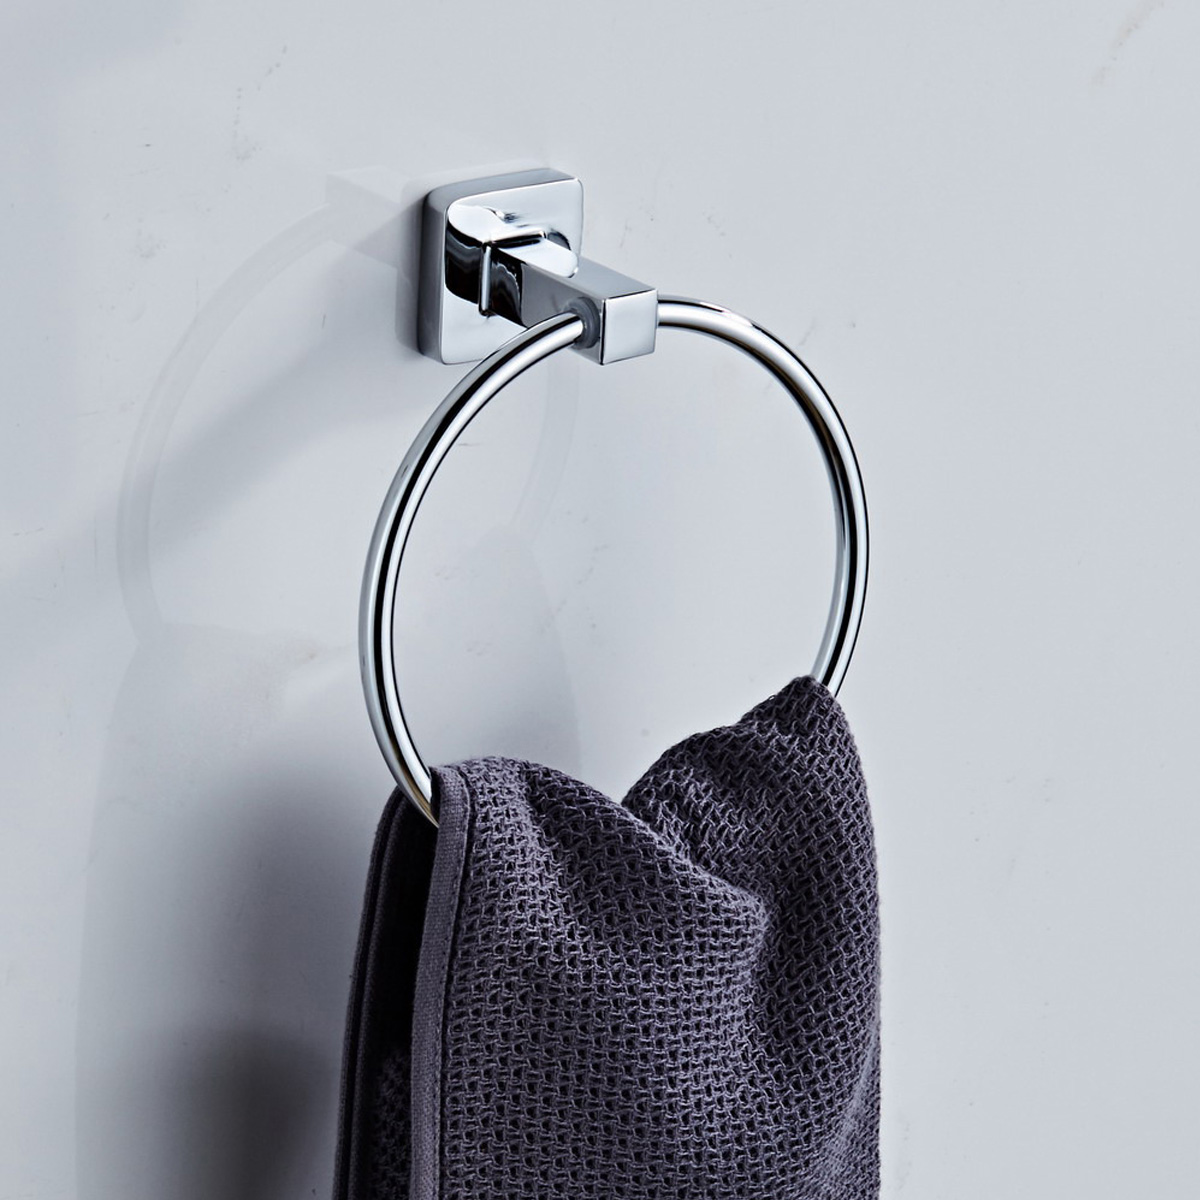 Stainless-Steel-Paper-Tissue-Holder-Rack-Hanger-Towel-Ring-Wall-Mounted-Shelf-1726325-3